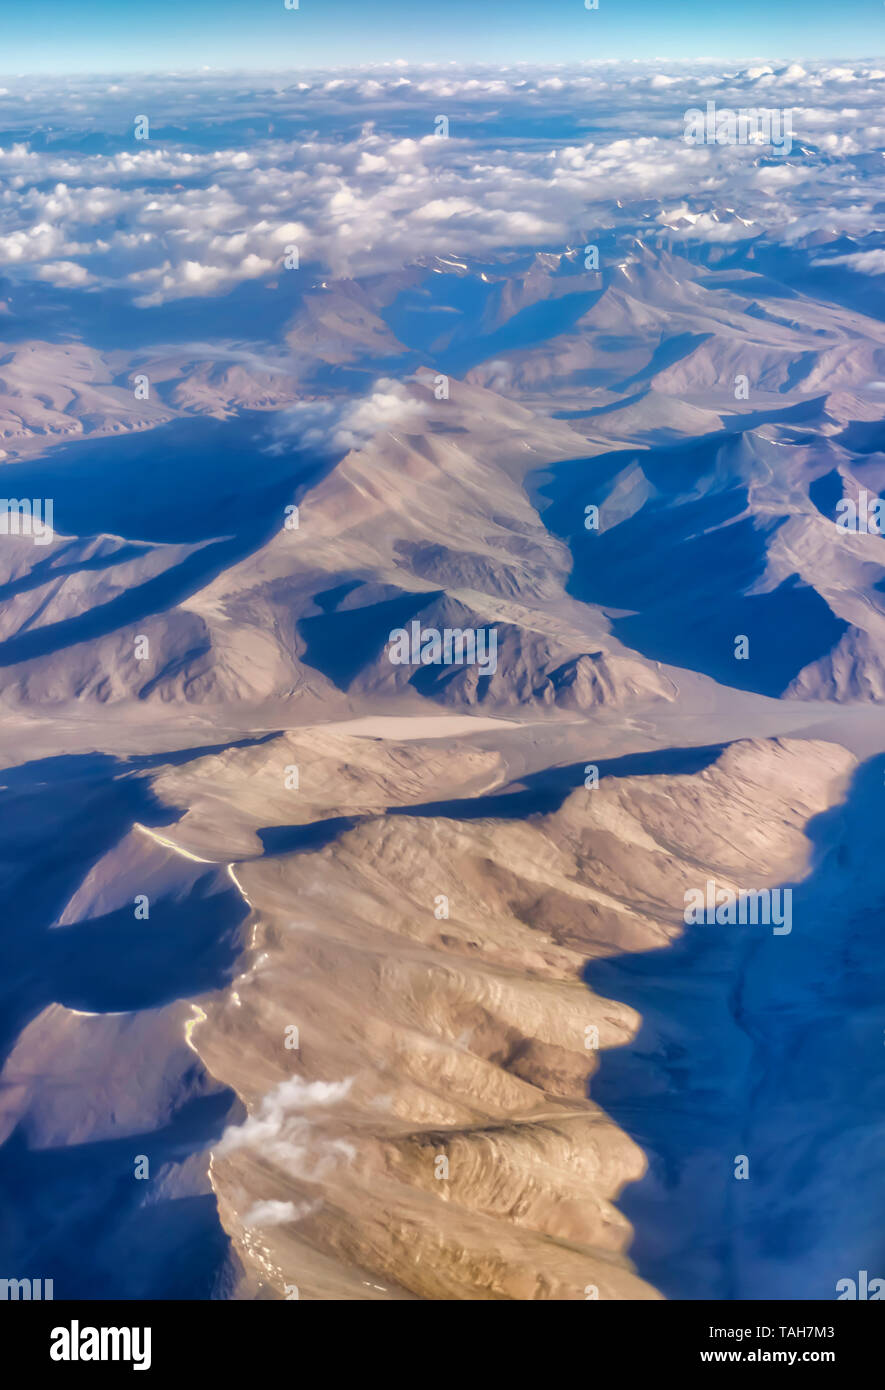 Ein Luftbild der kargen Bergwelt des Zanskar Spektrum der inneren Himalaja, Indien. Aus einem Flugzeug auf einem frühen Juli morgens genommen. Stockfoto